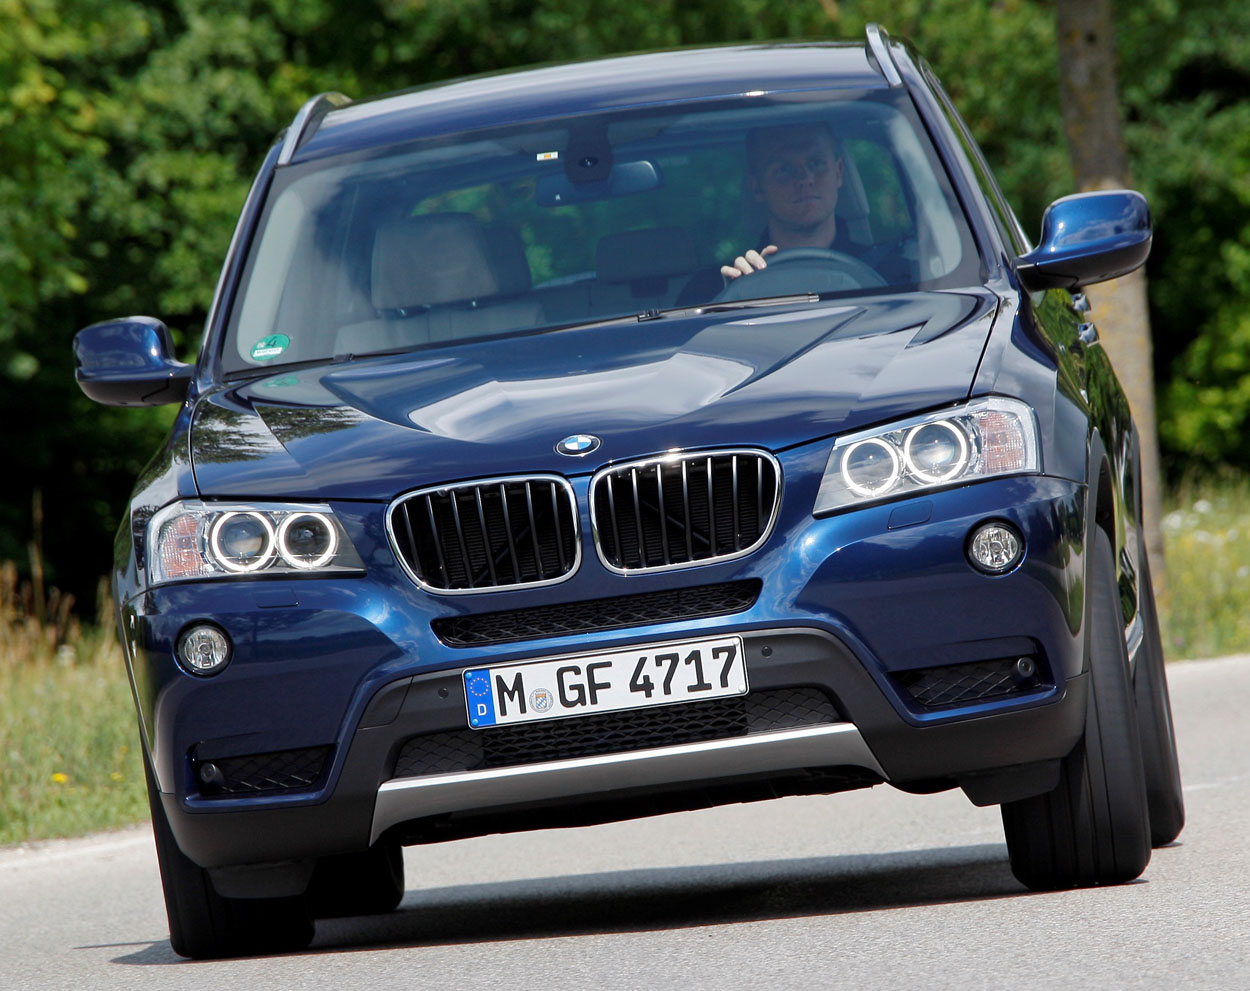 The BMW X3 (08/2011)